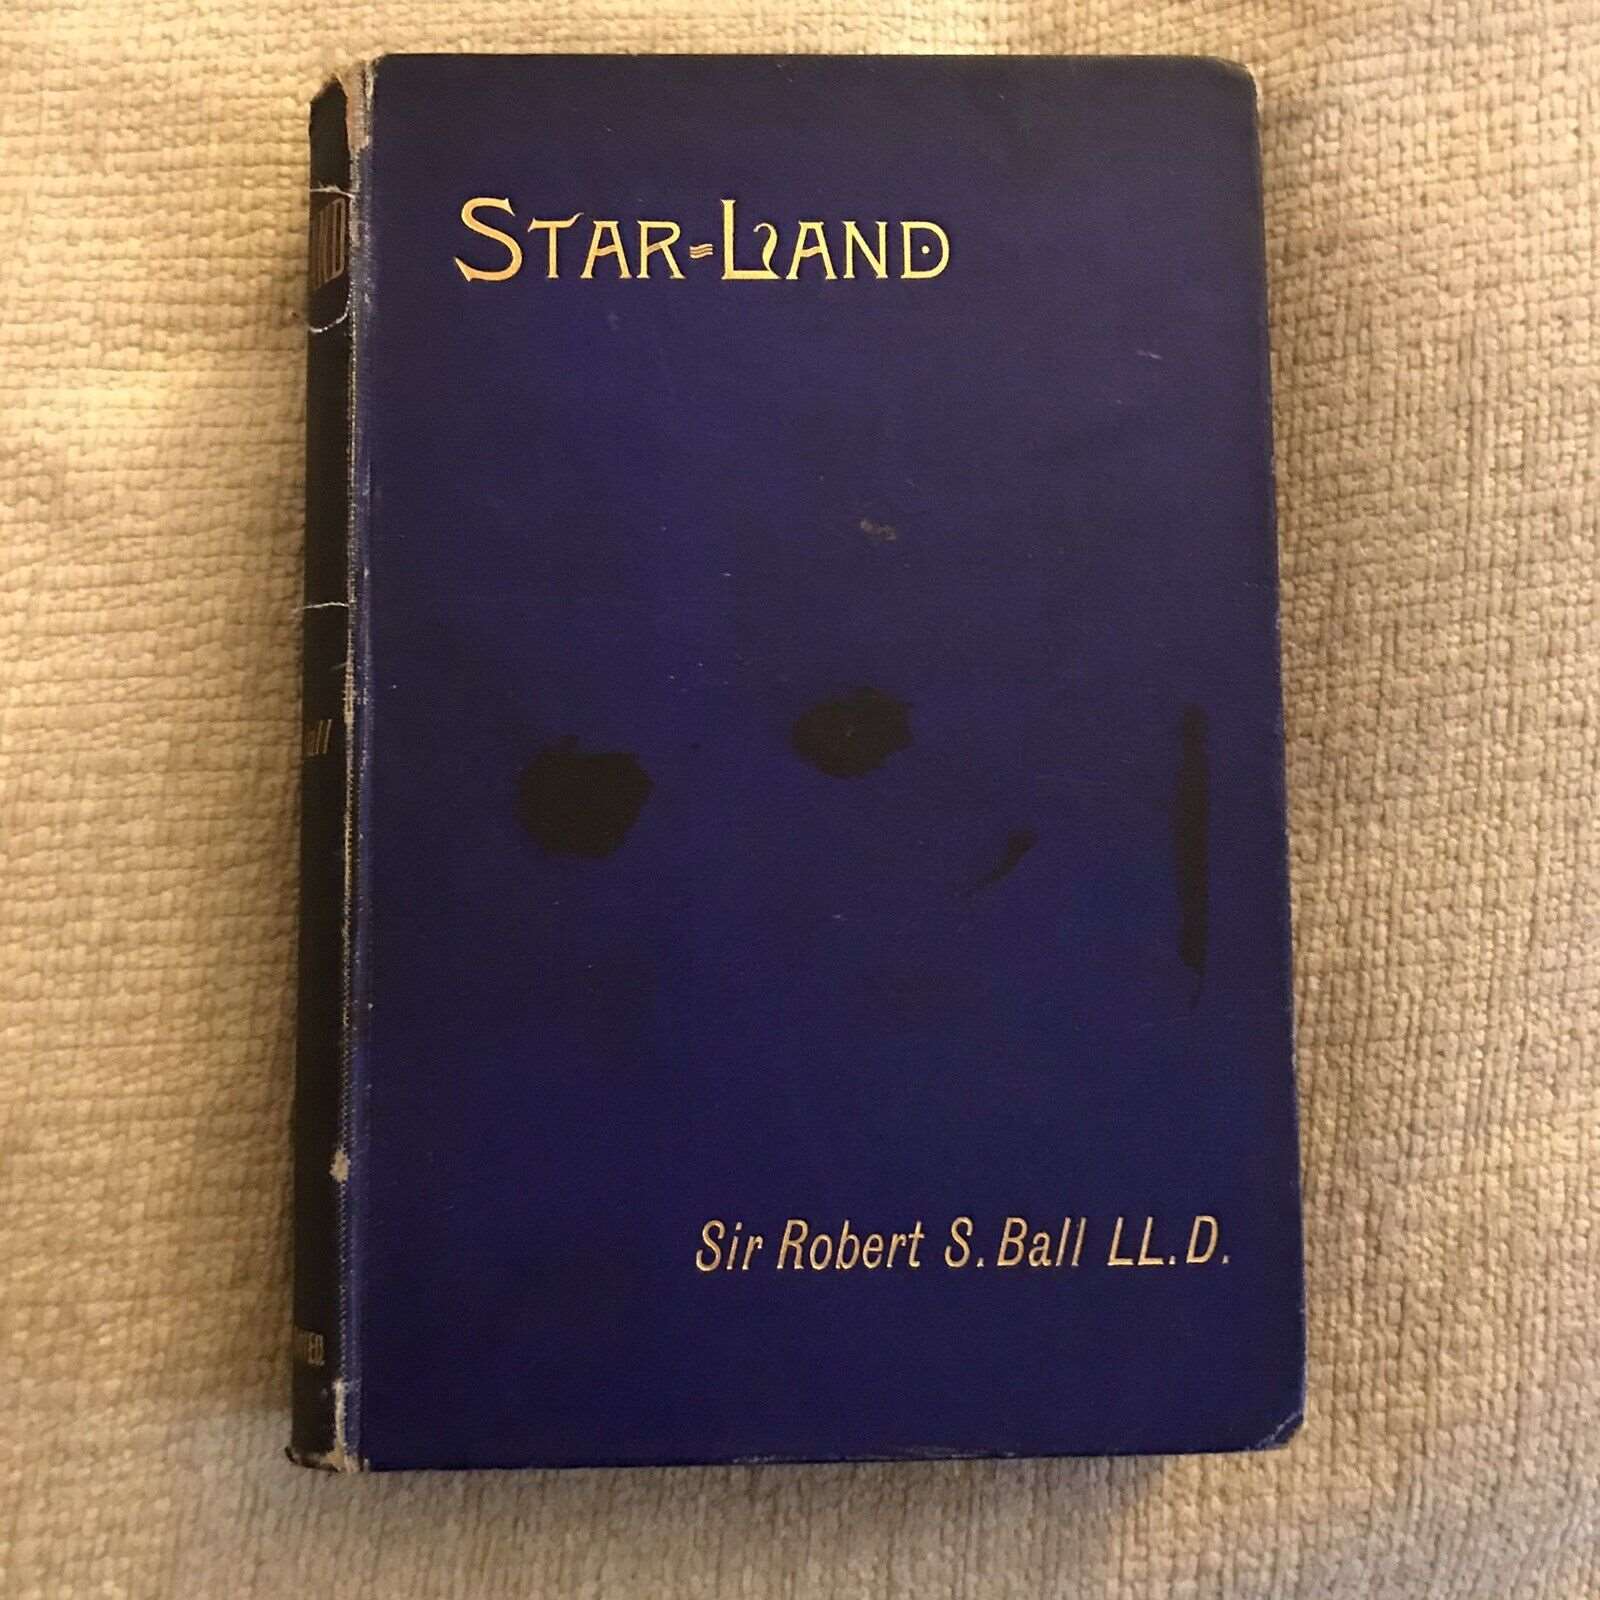 1890 Star-Land - Sir Robert Stawell Ball (Cassell & Co Ltd) Honeyburn Books (UK)